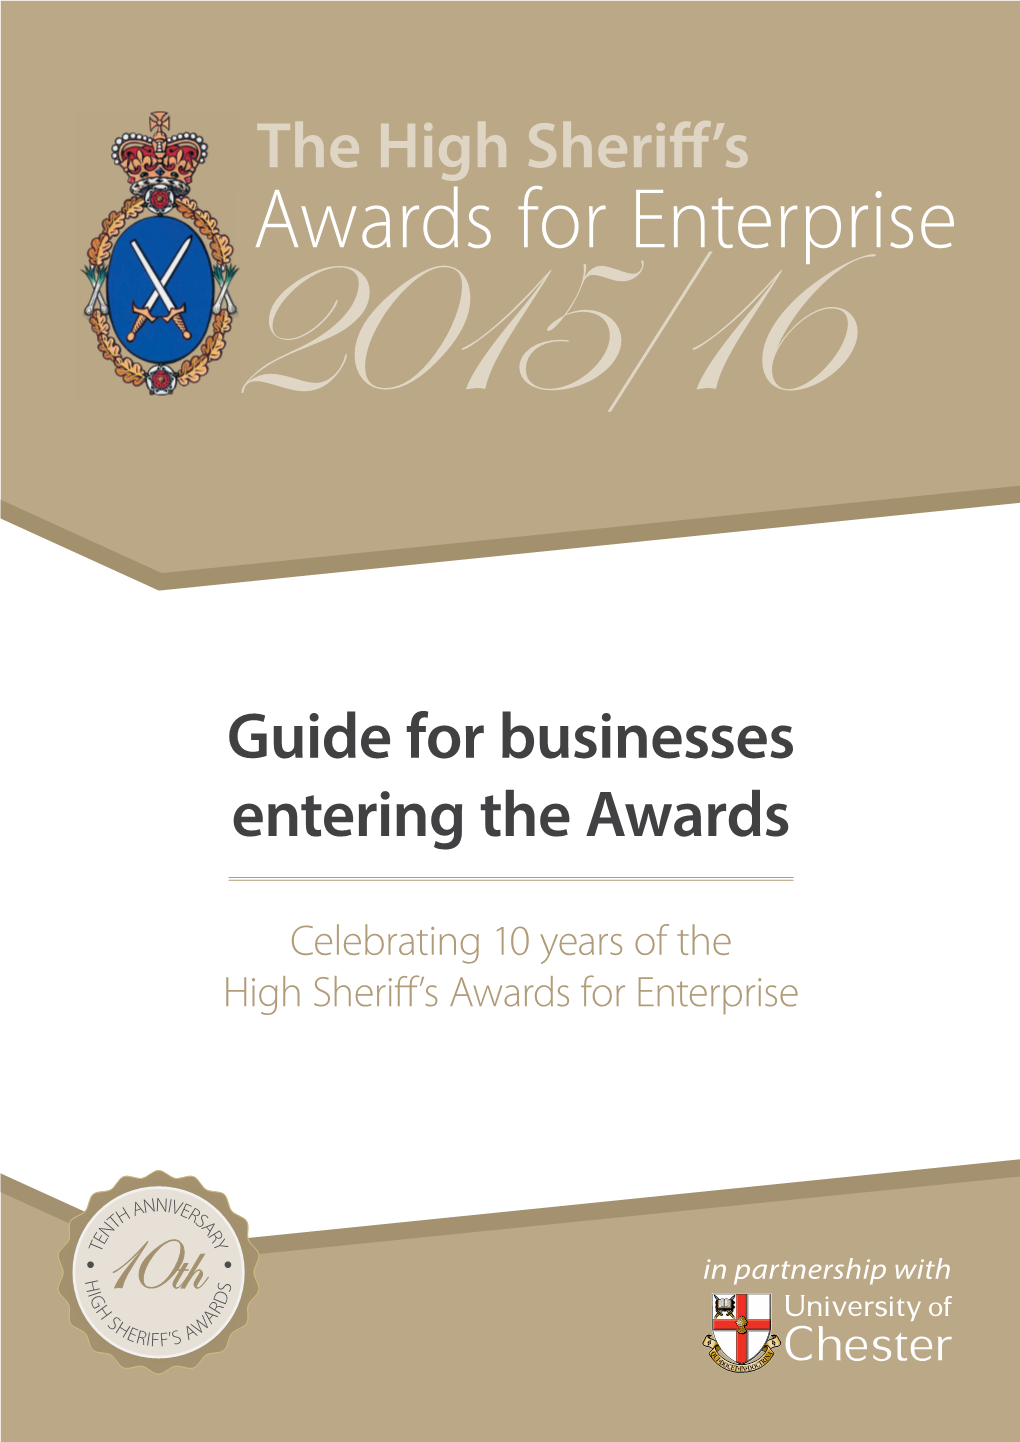 Awards for Enterprise 2 015/16